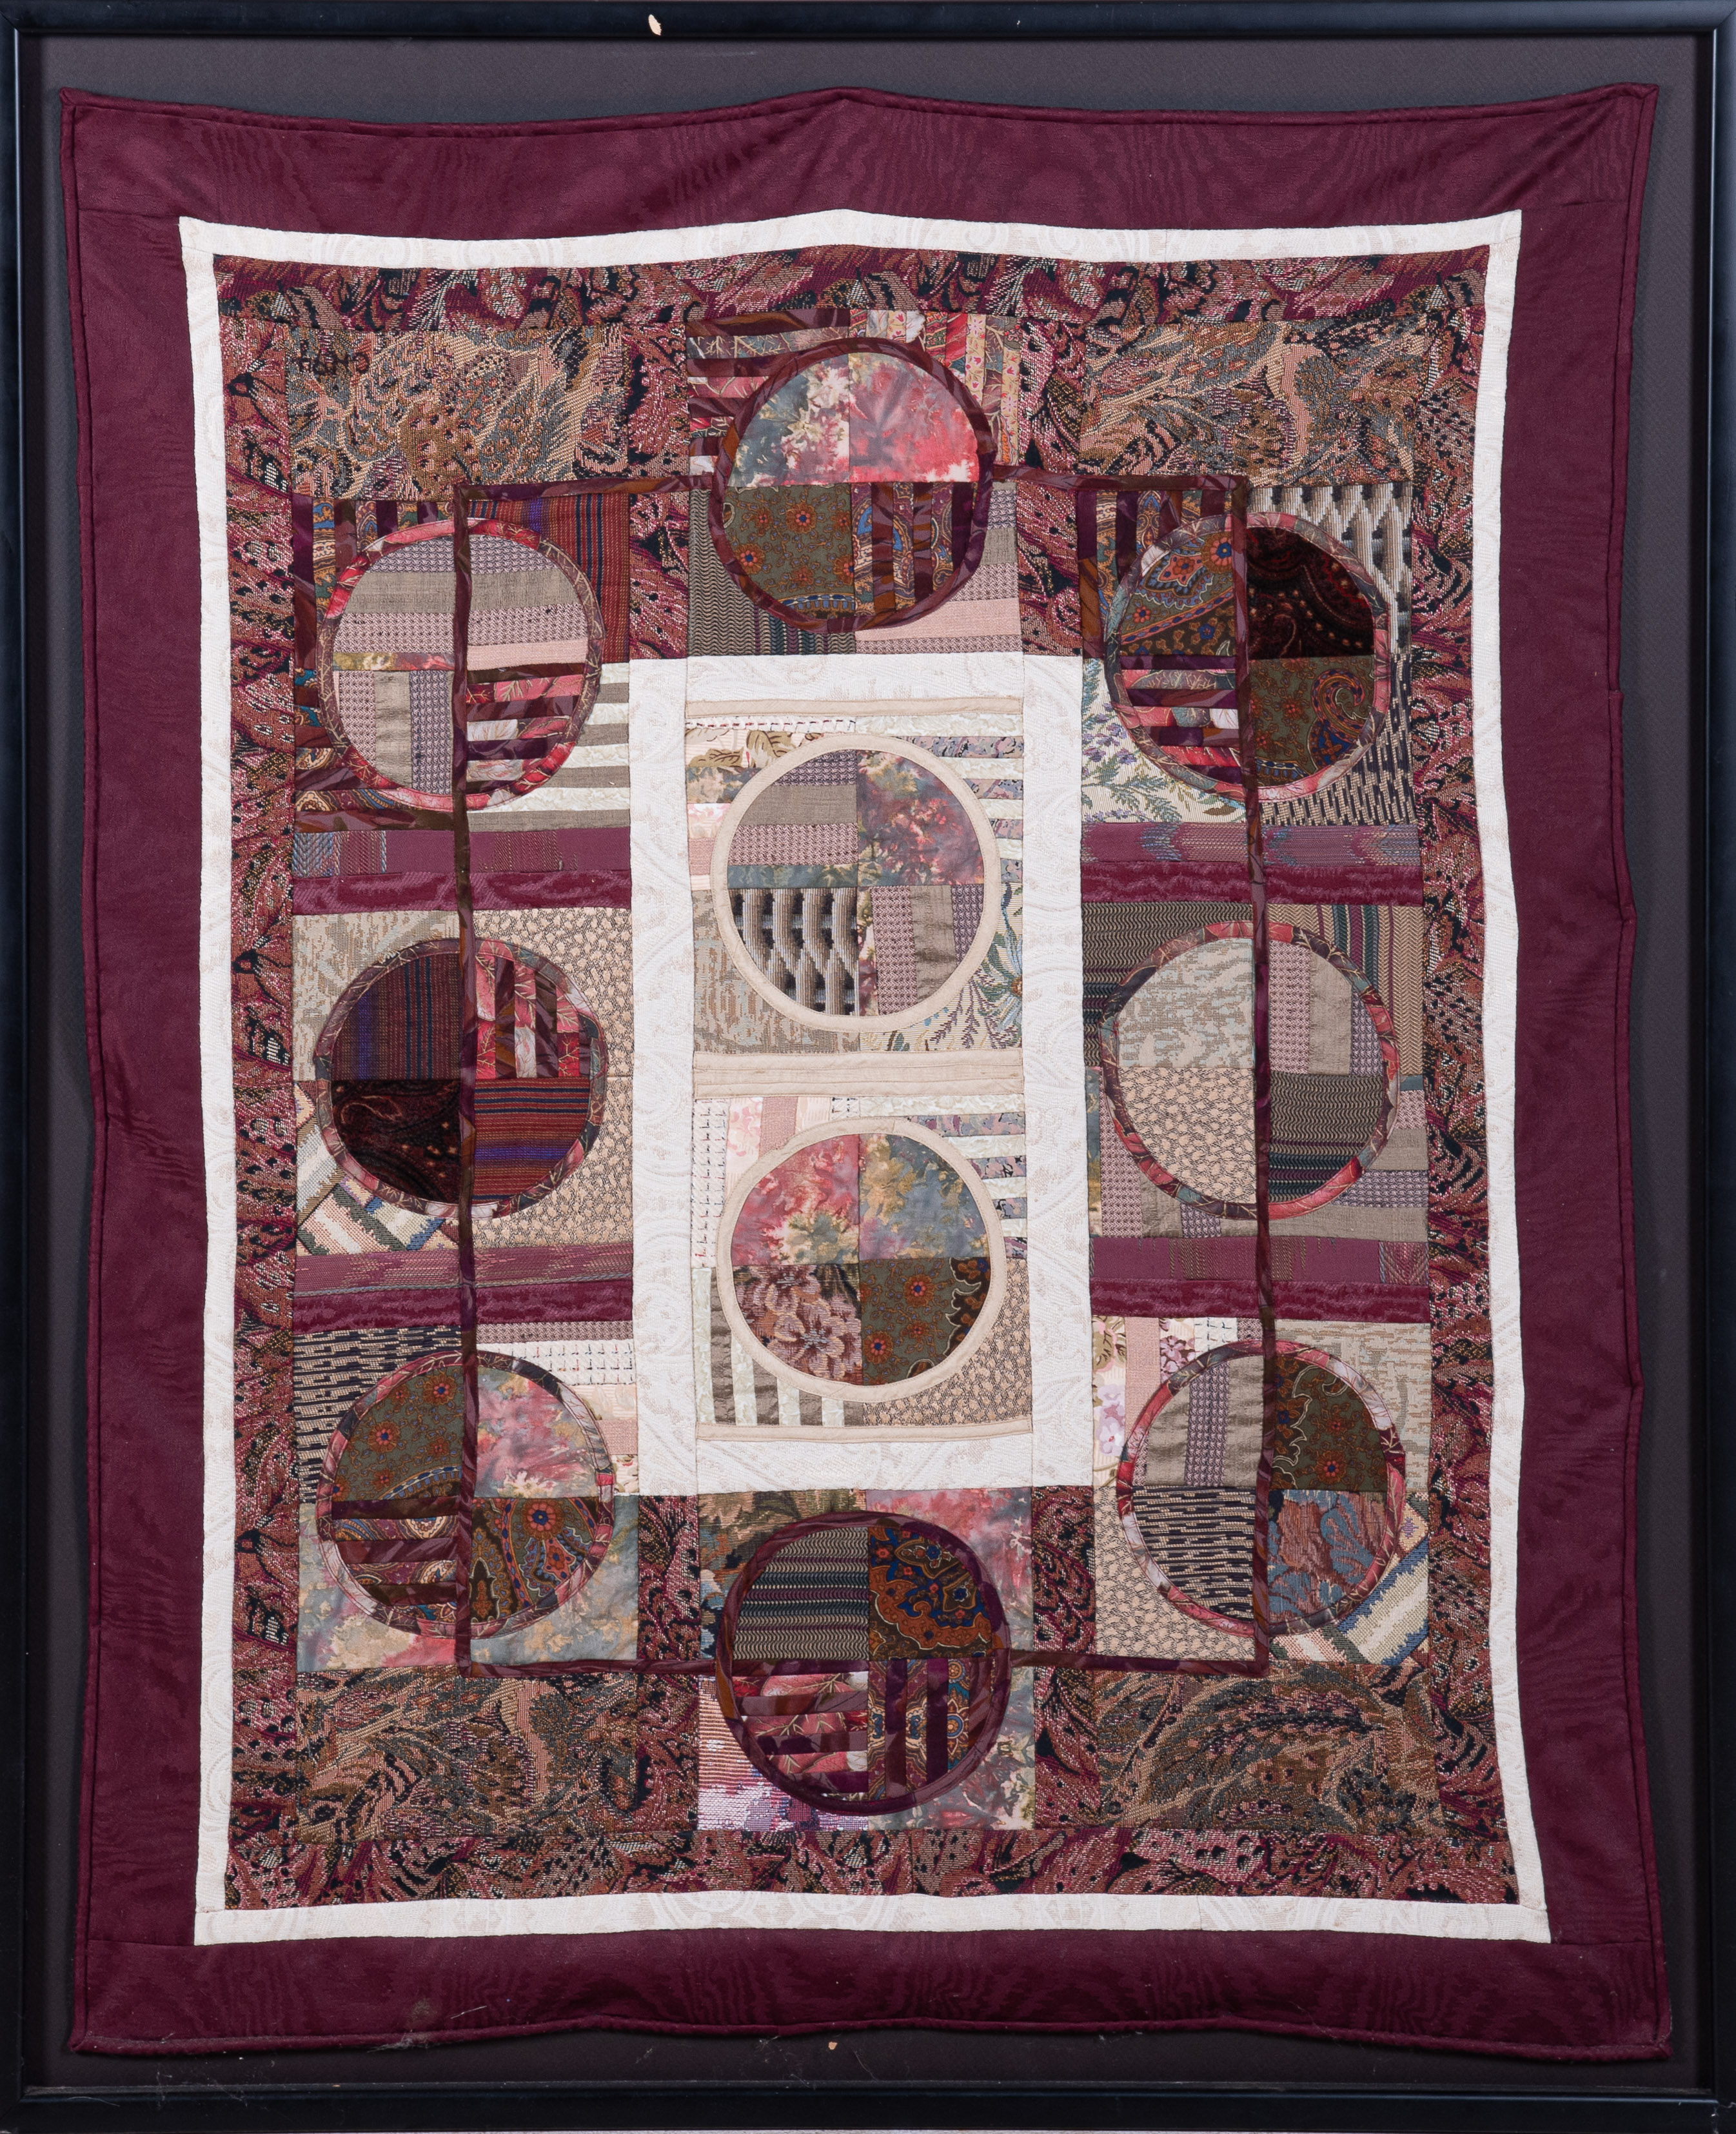 A framed hand pieced quilt, artist